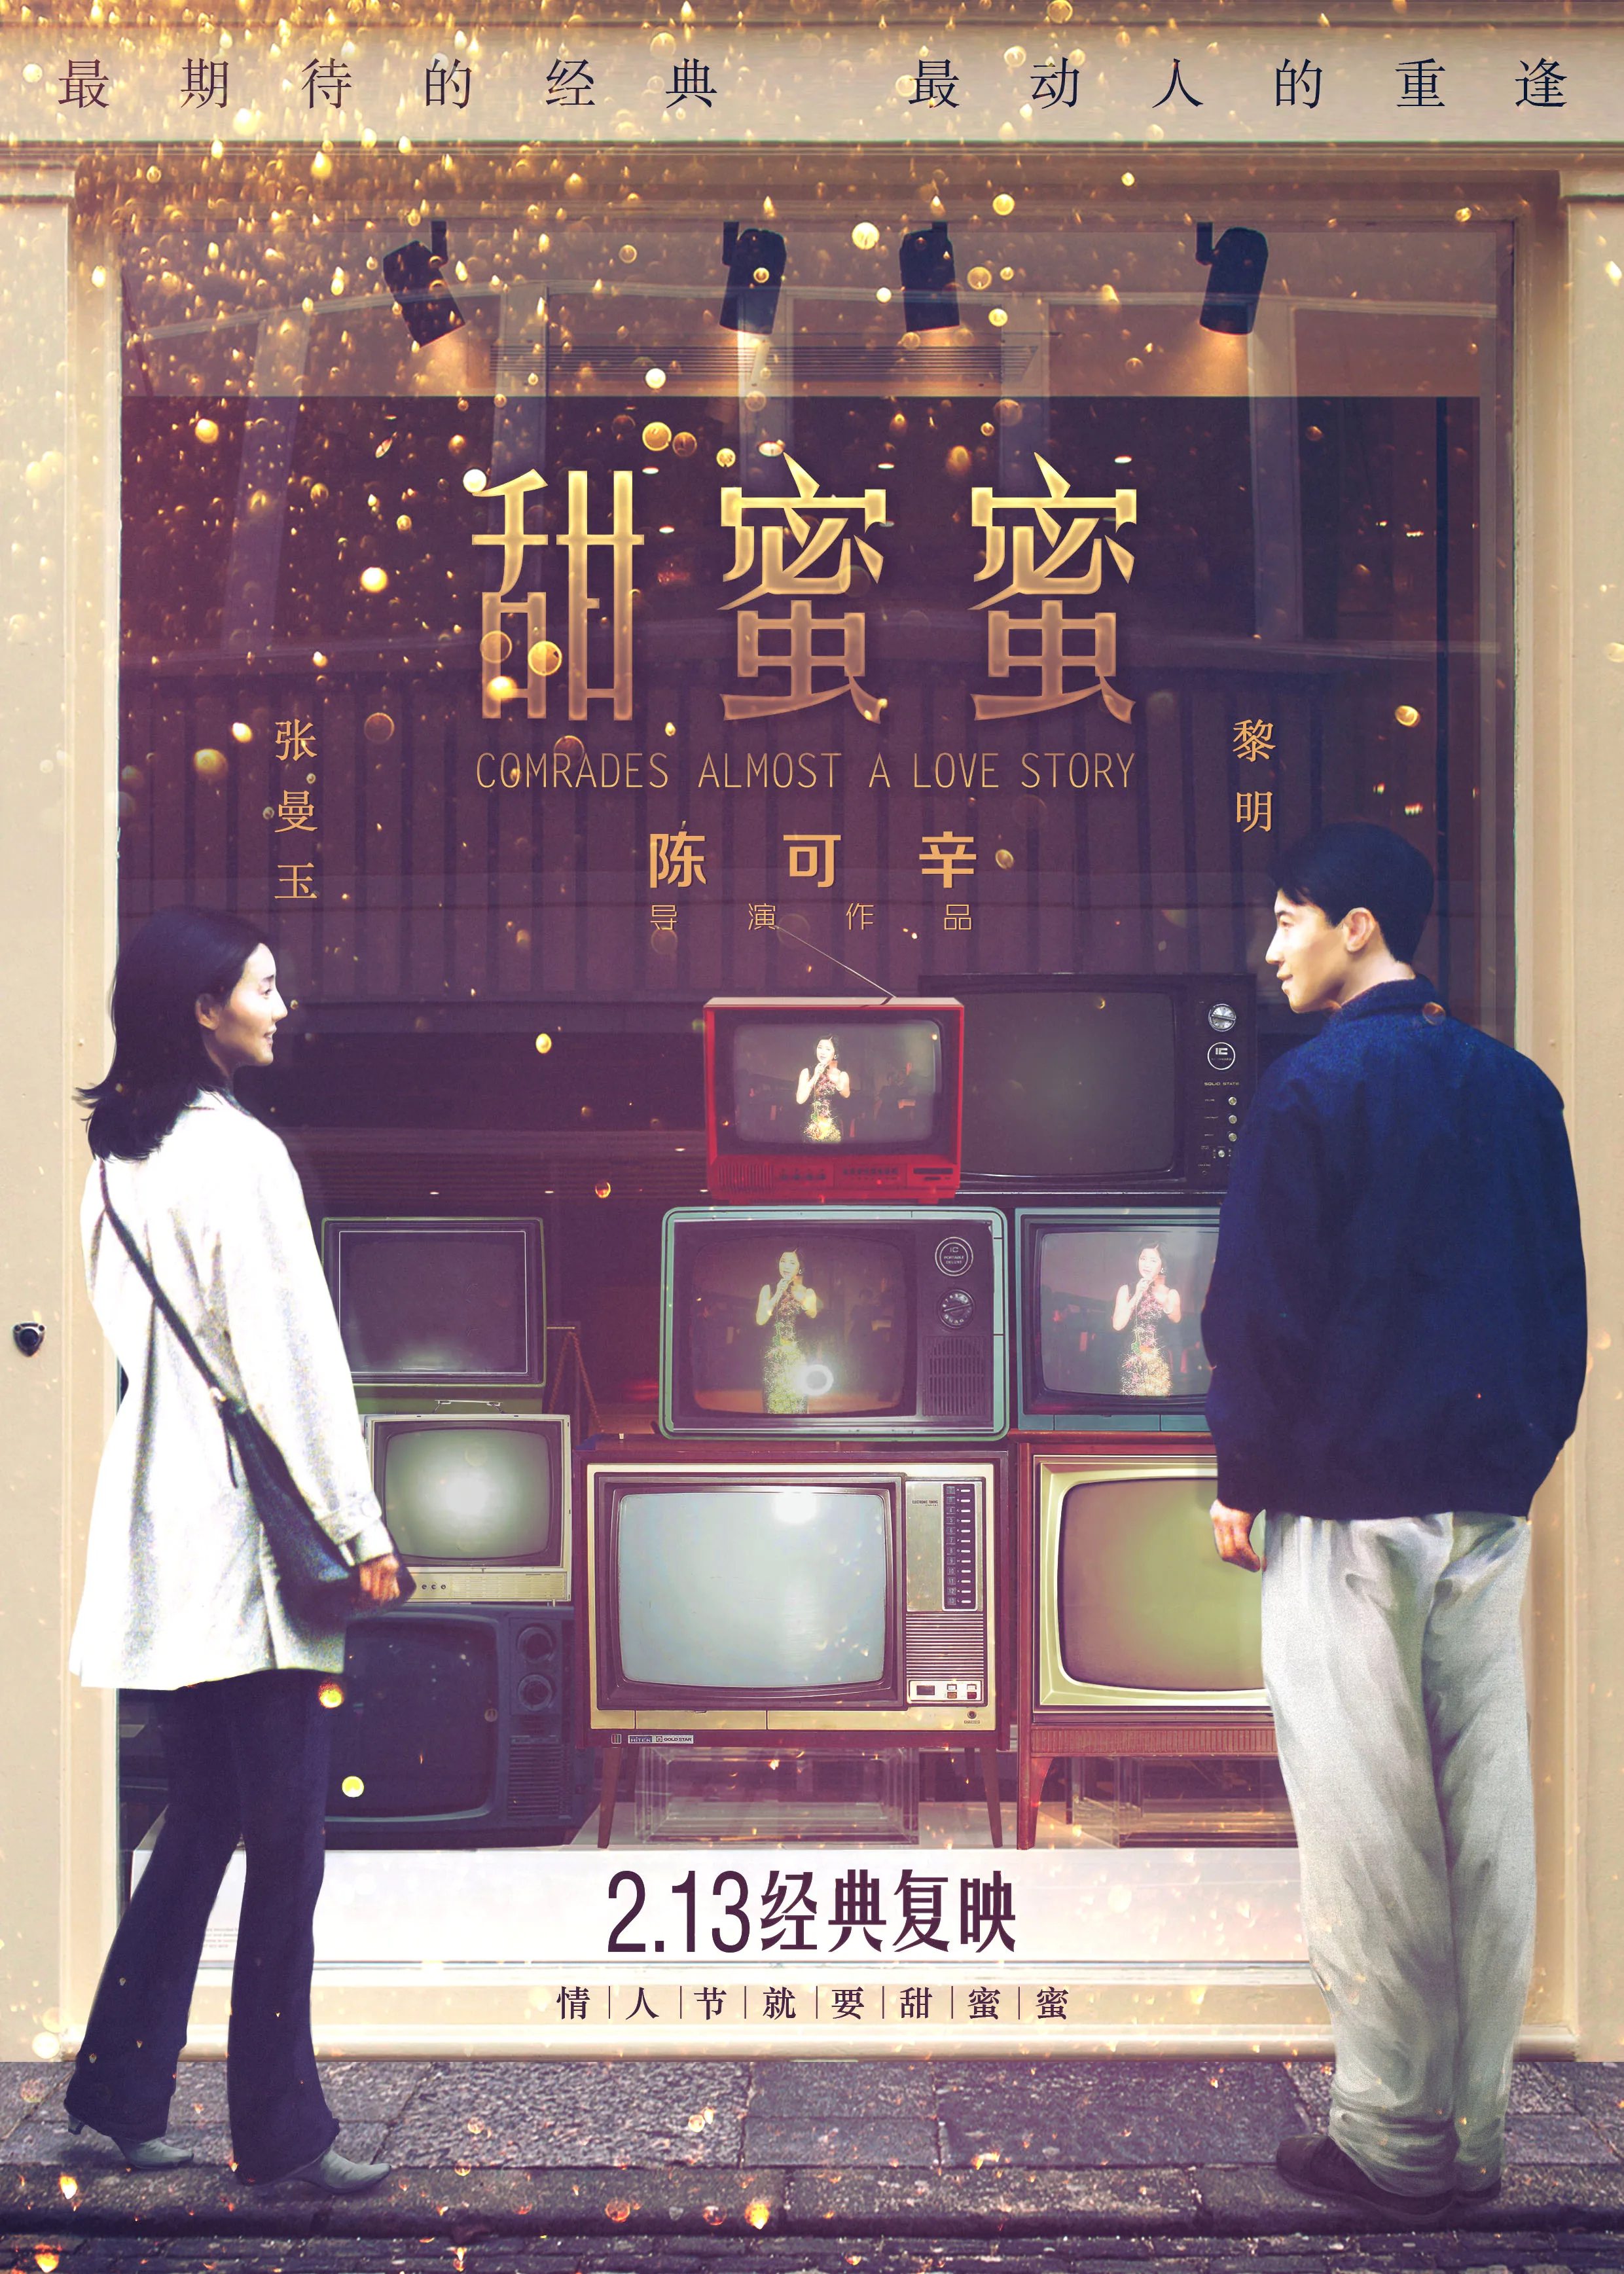 

Постер из фильма «почти история любви», Шелковый плакат, домашний Настенный декор, картина для комнаты